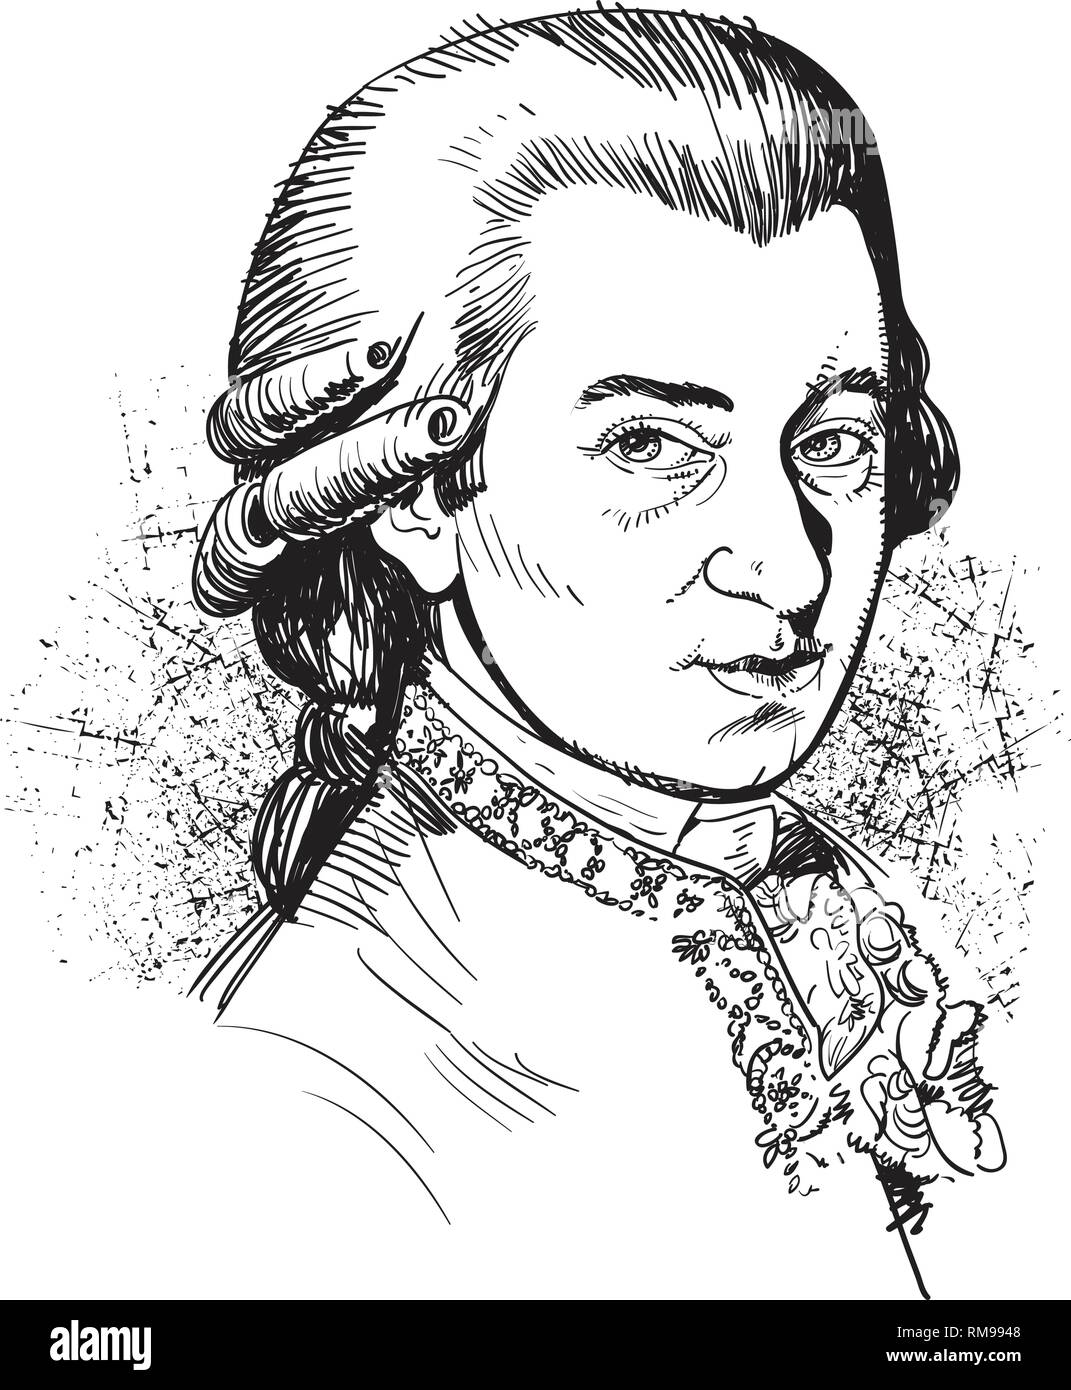 Wolfgang Amadeus Mozart portrait dans l'art de l'illustration. Il a été compositeur prolifique et influent de l'époque de la musique classique. Illustration de Vecteur